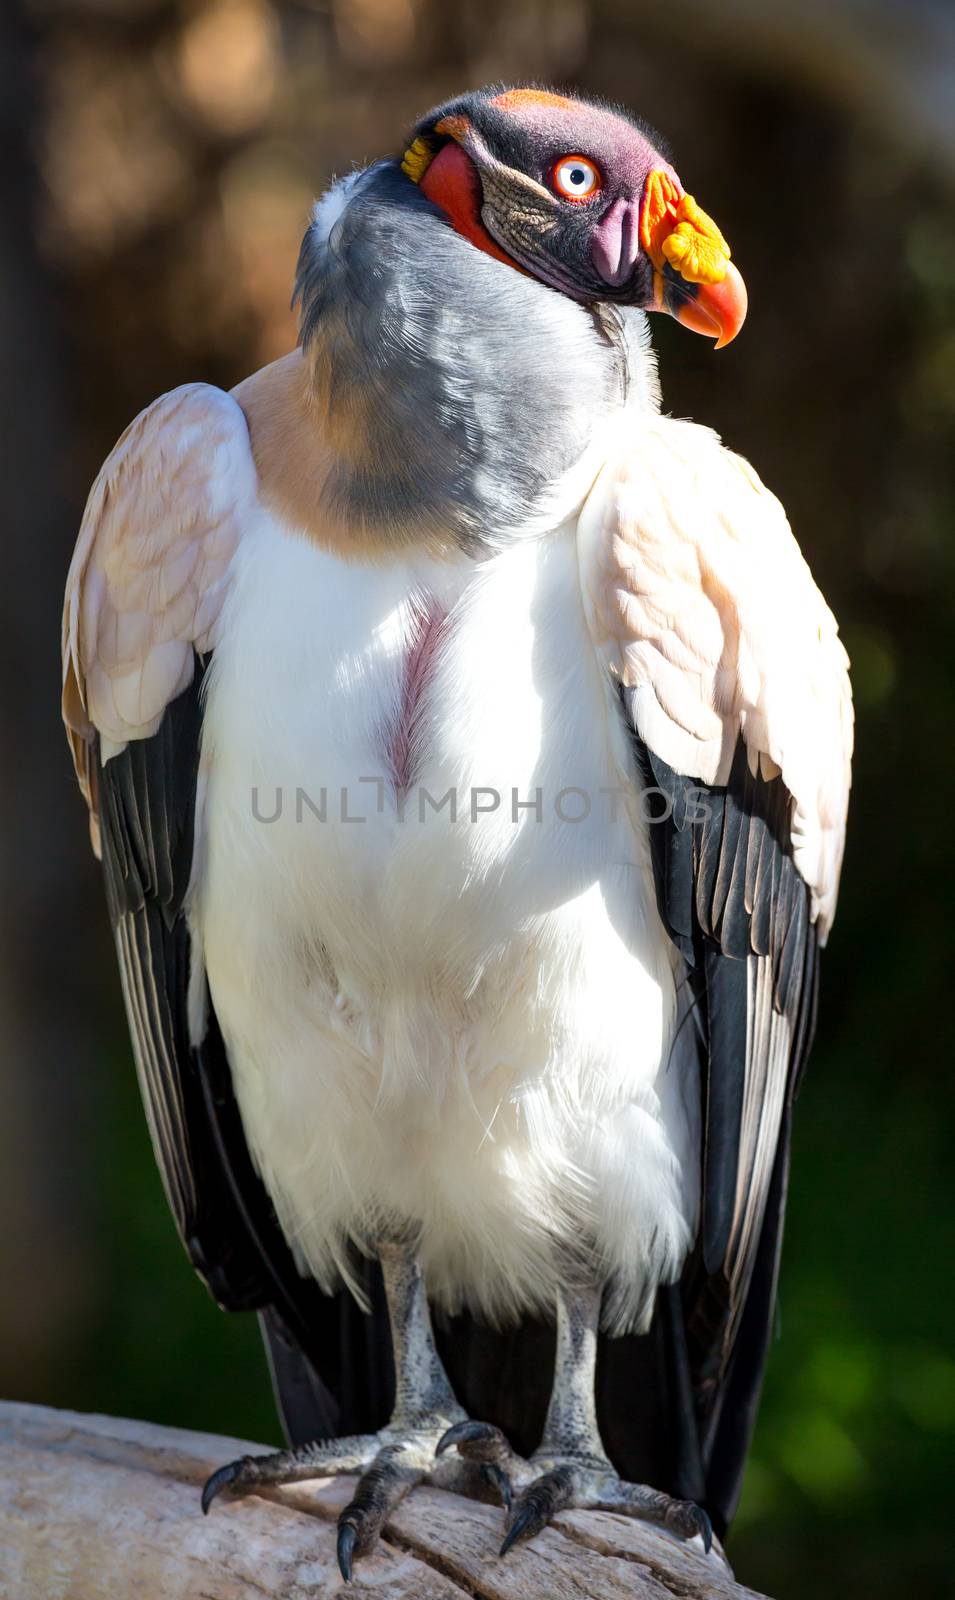 Striking King Vulture bird with large orange beak